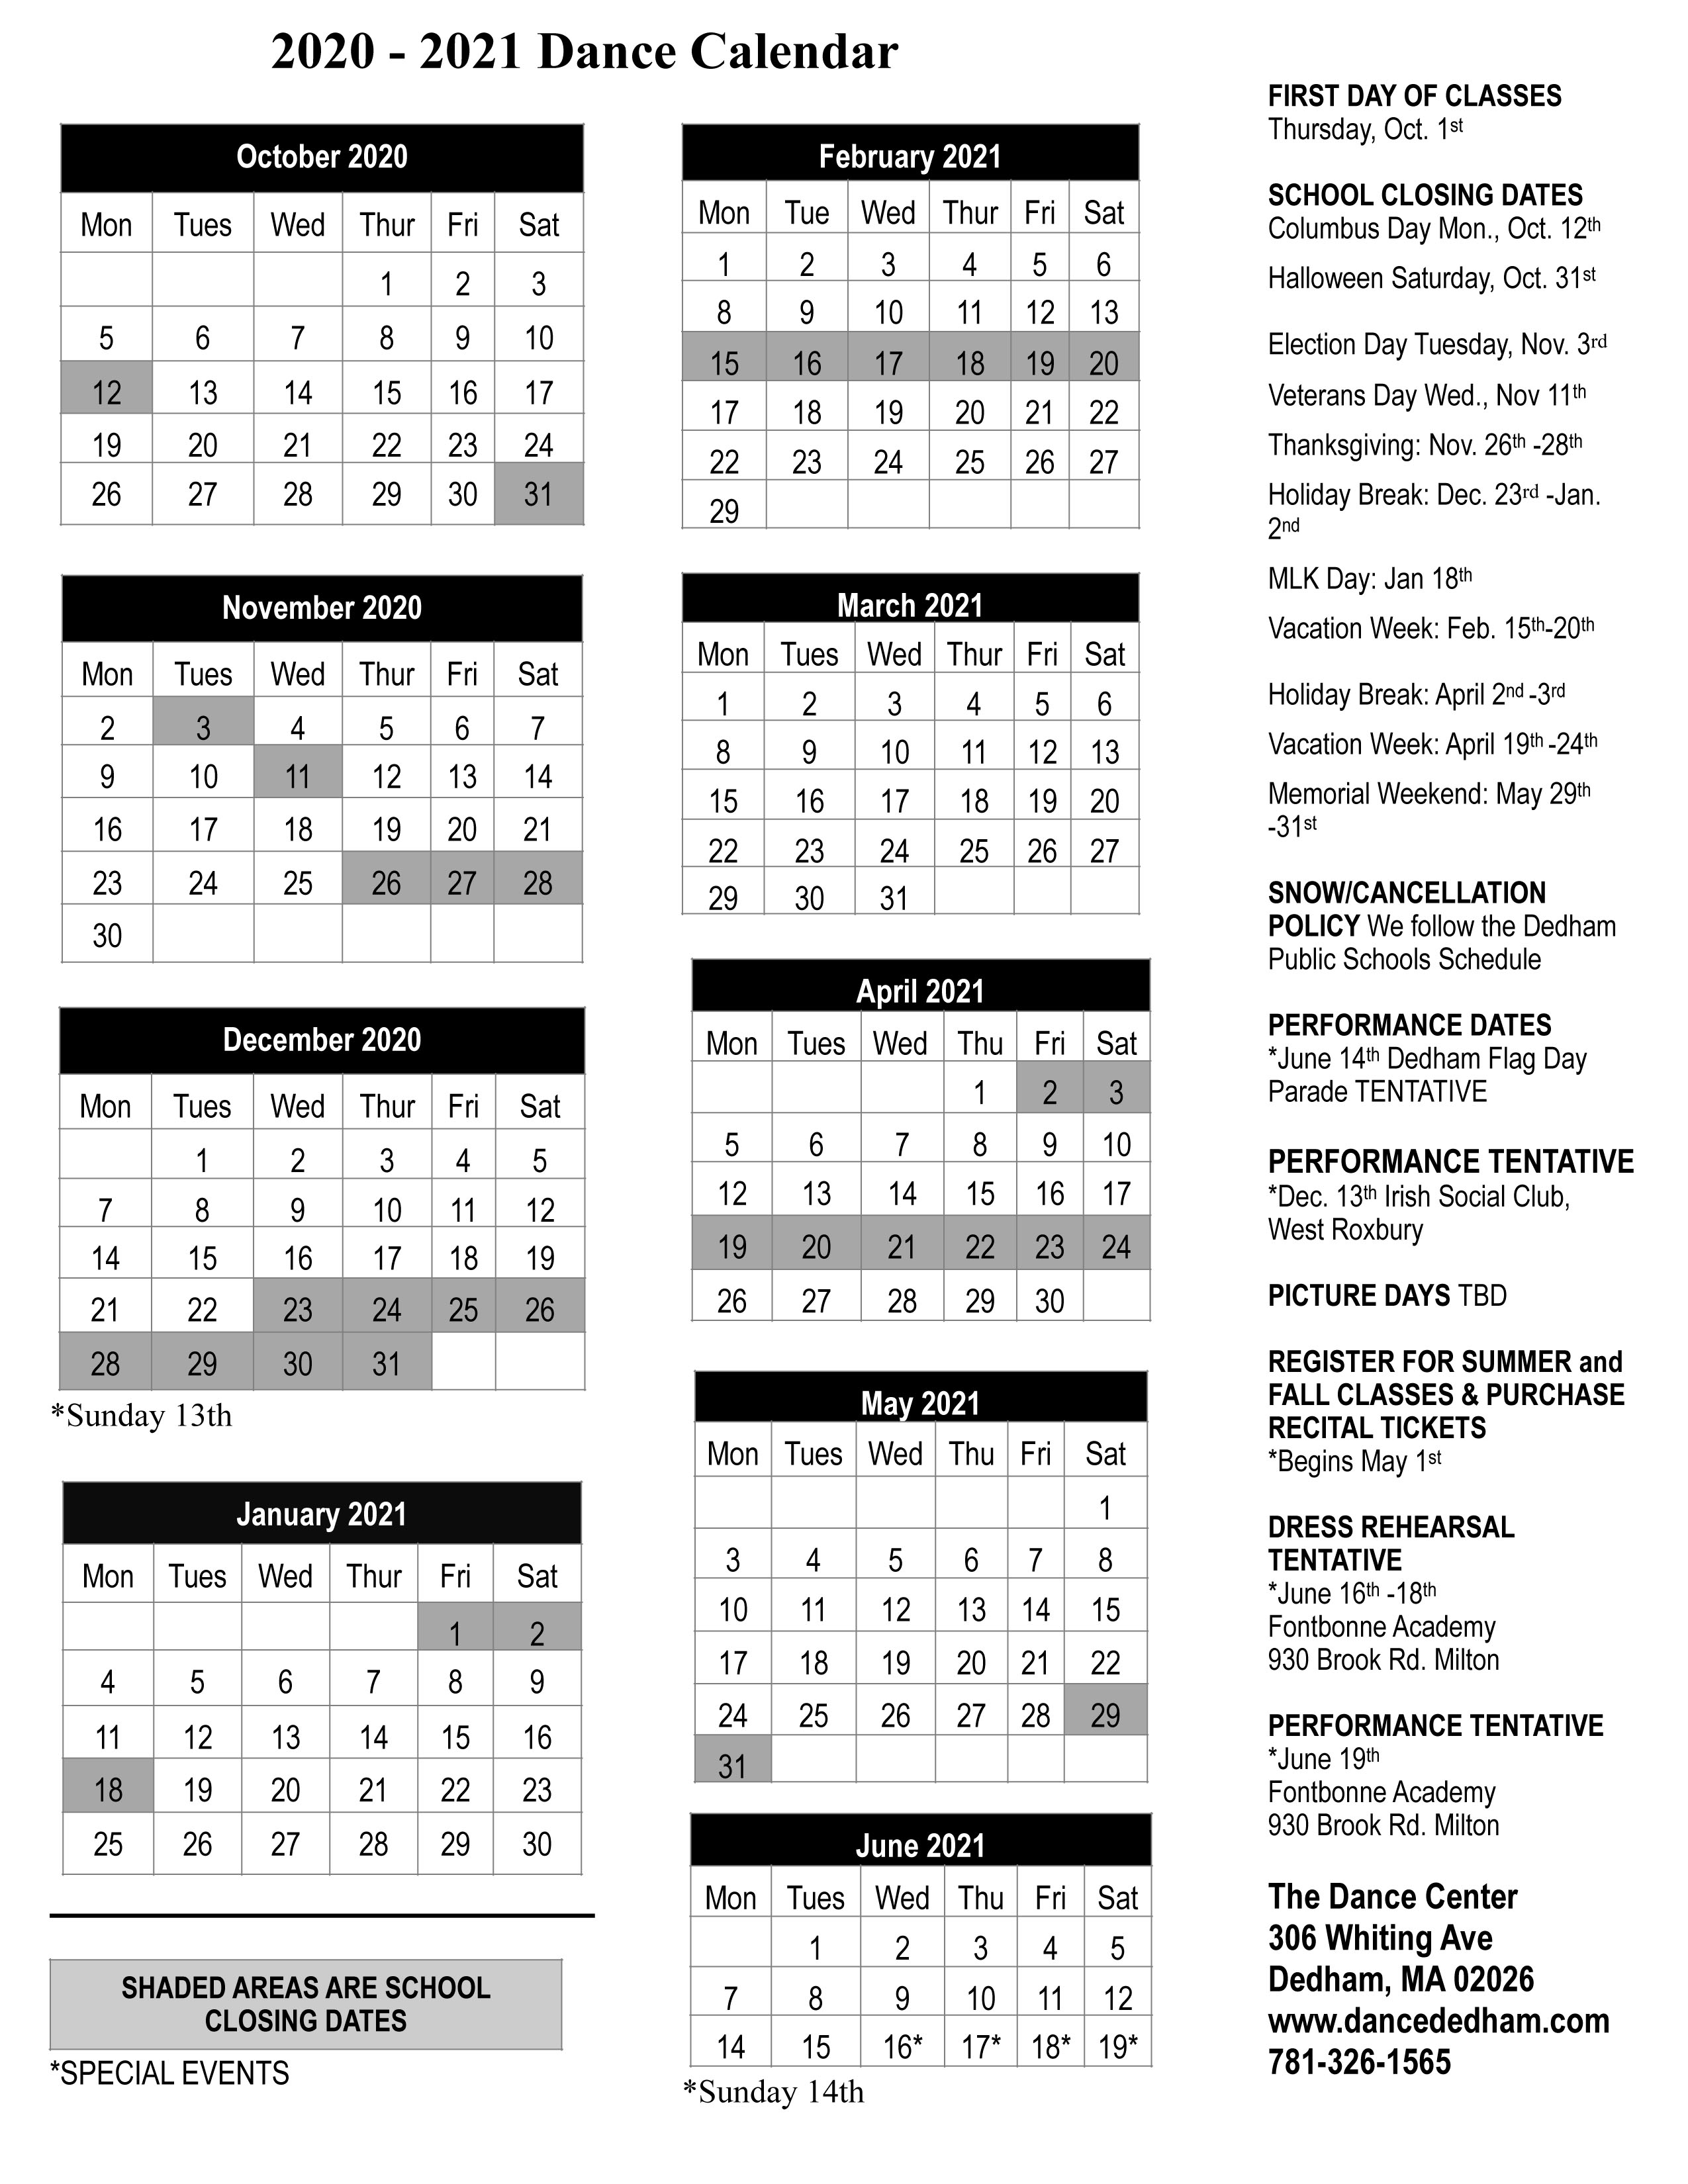 The Dance Center Calendar